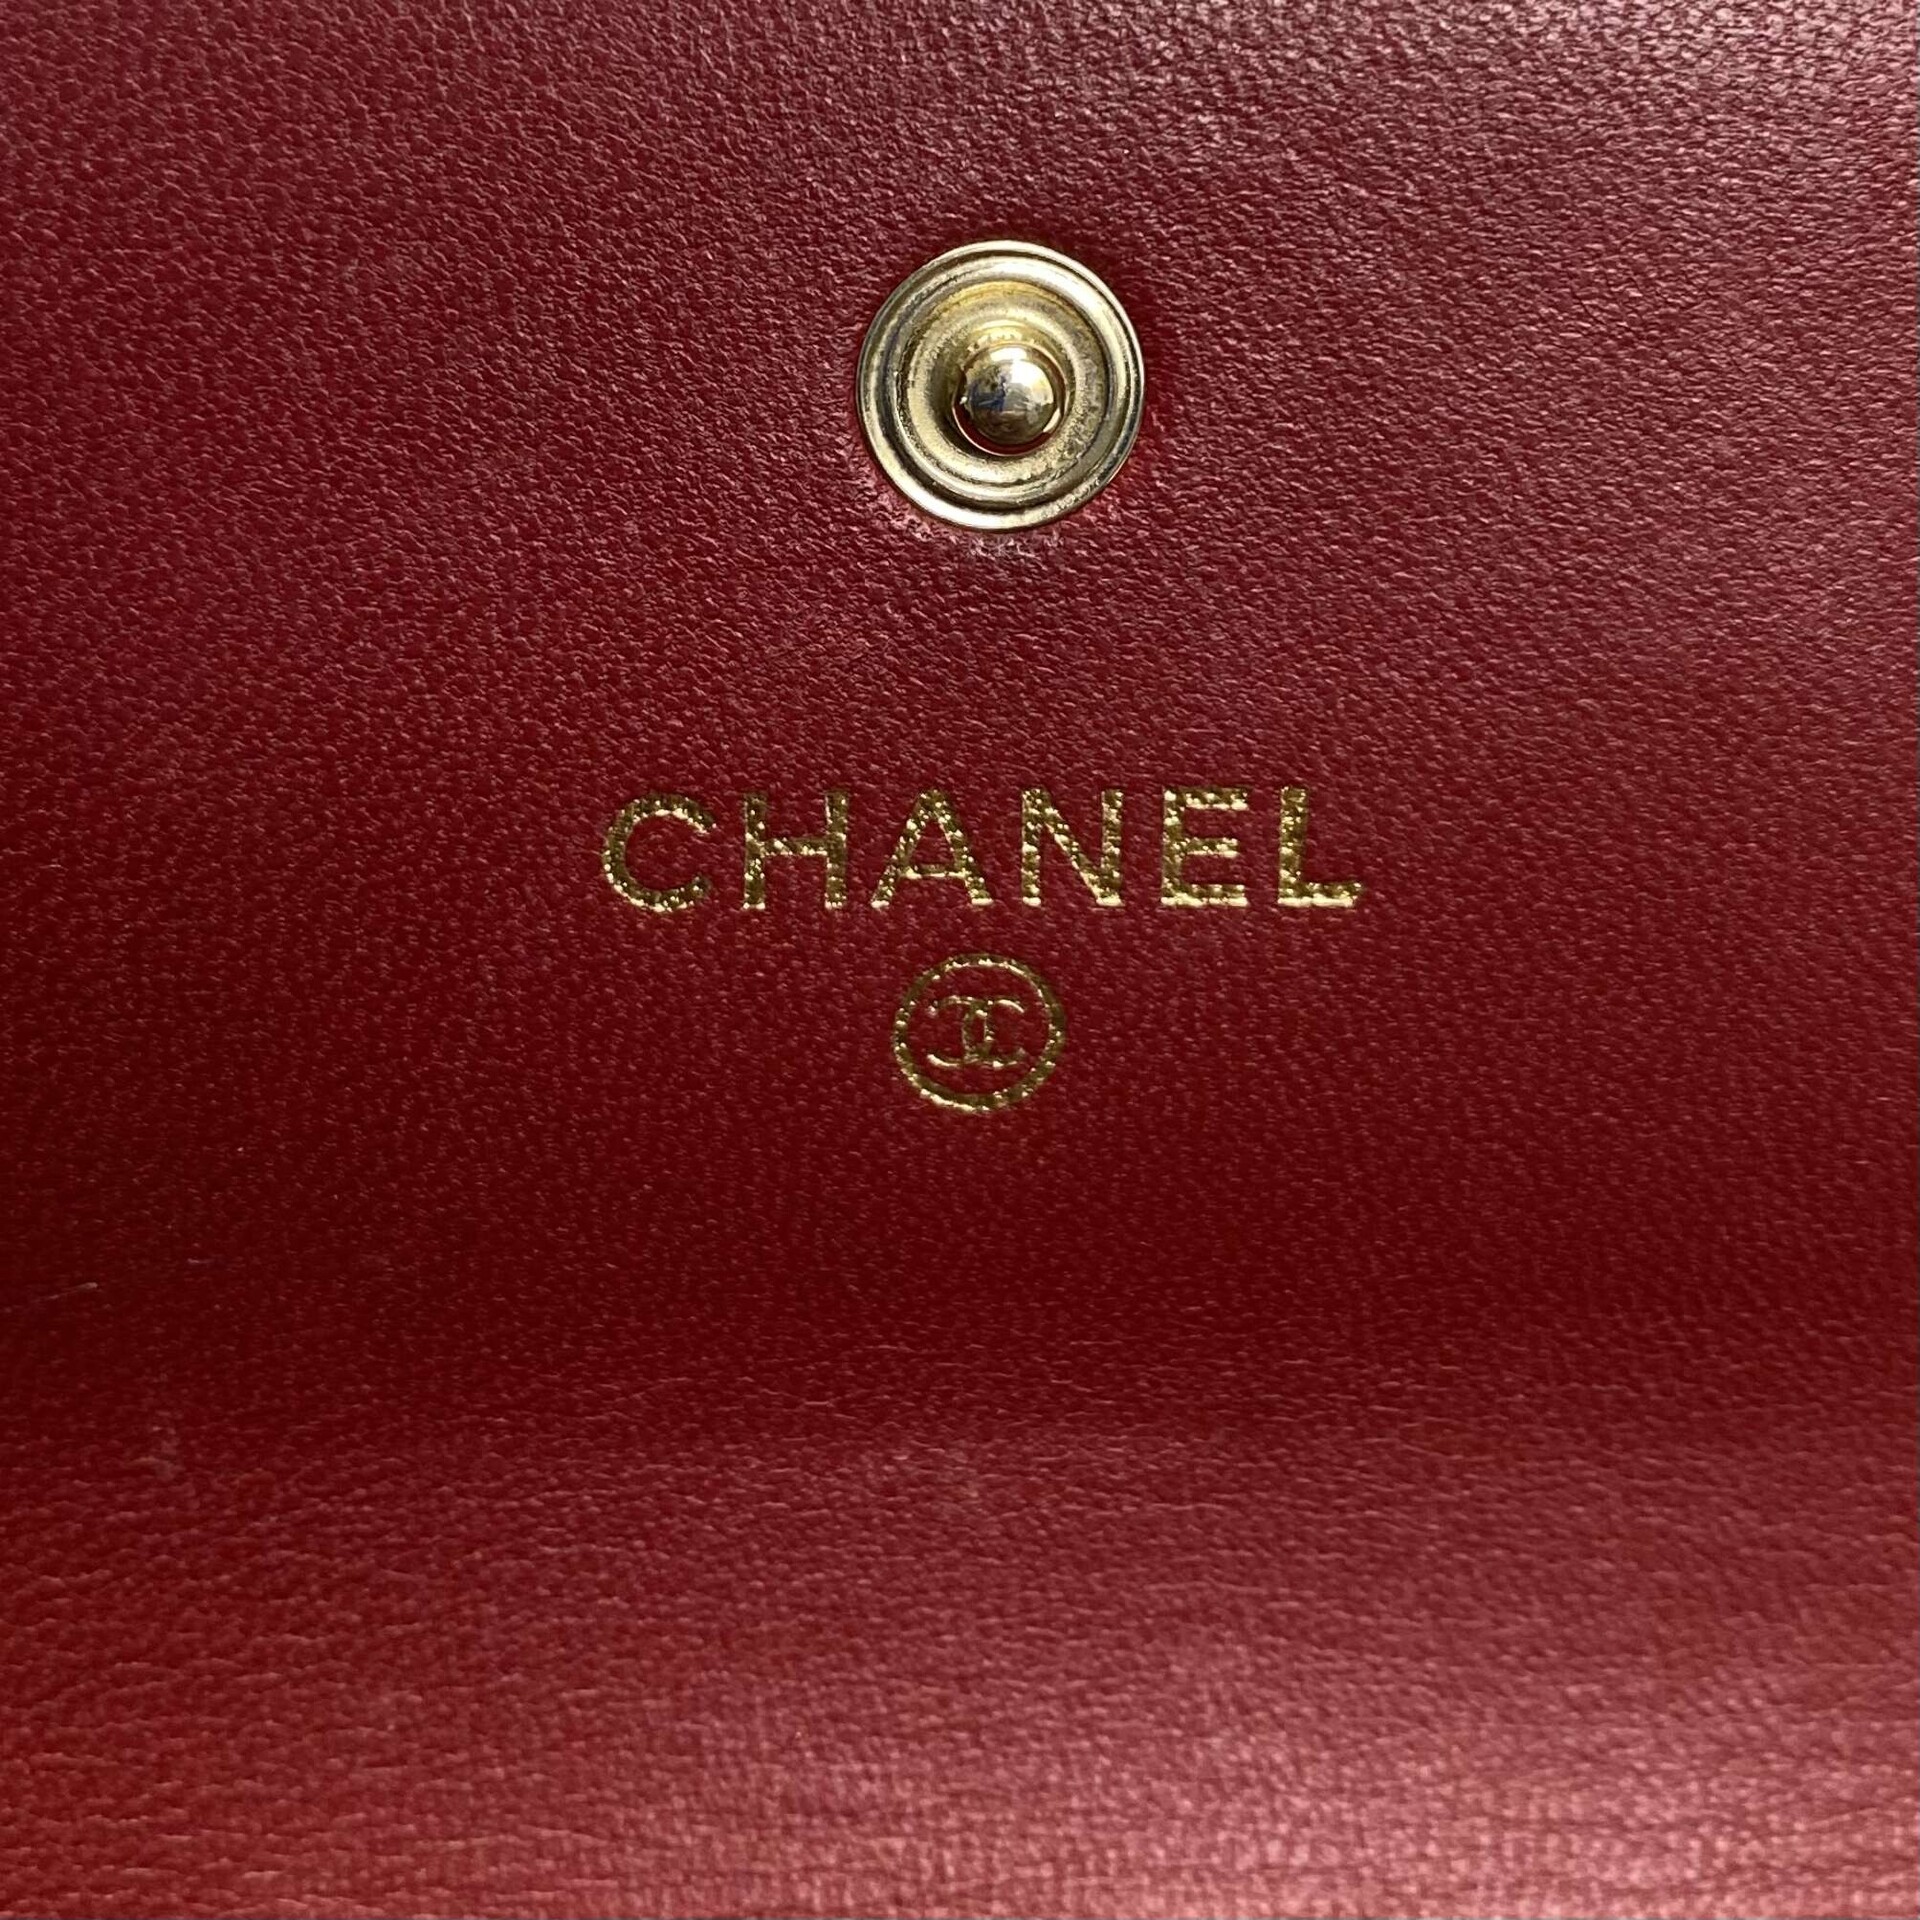 Carteira Chanel Lambskin Vermelha